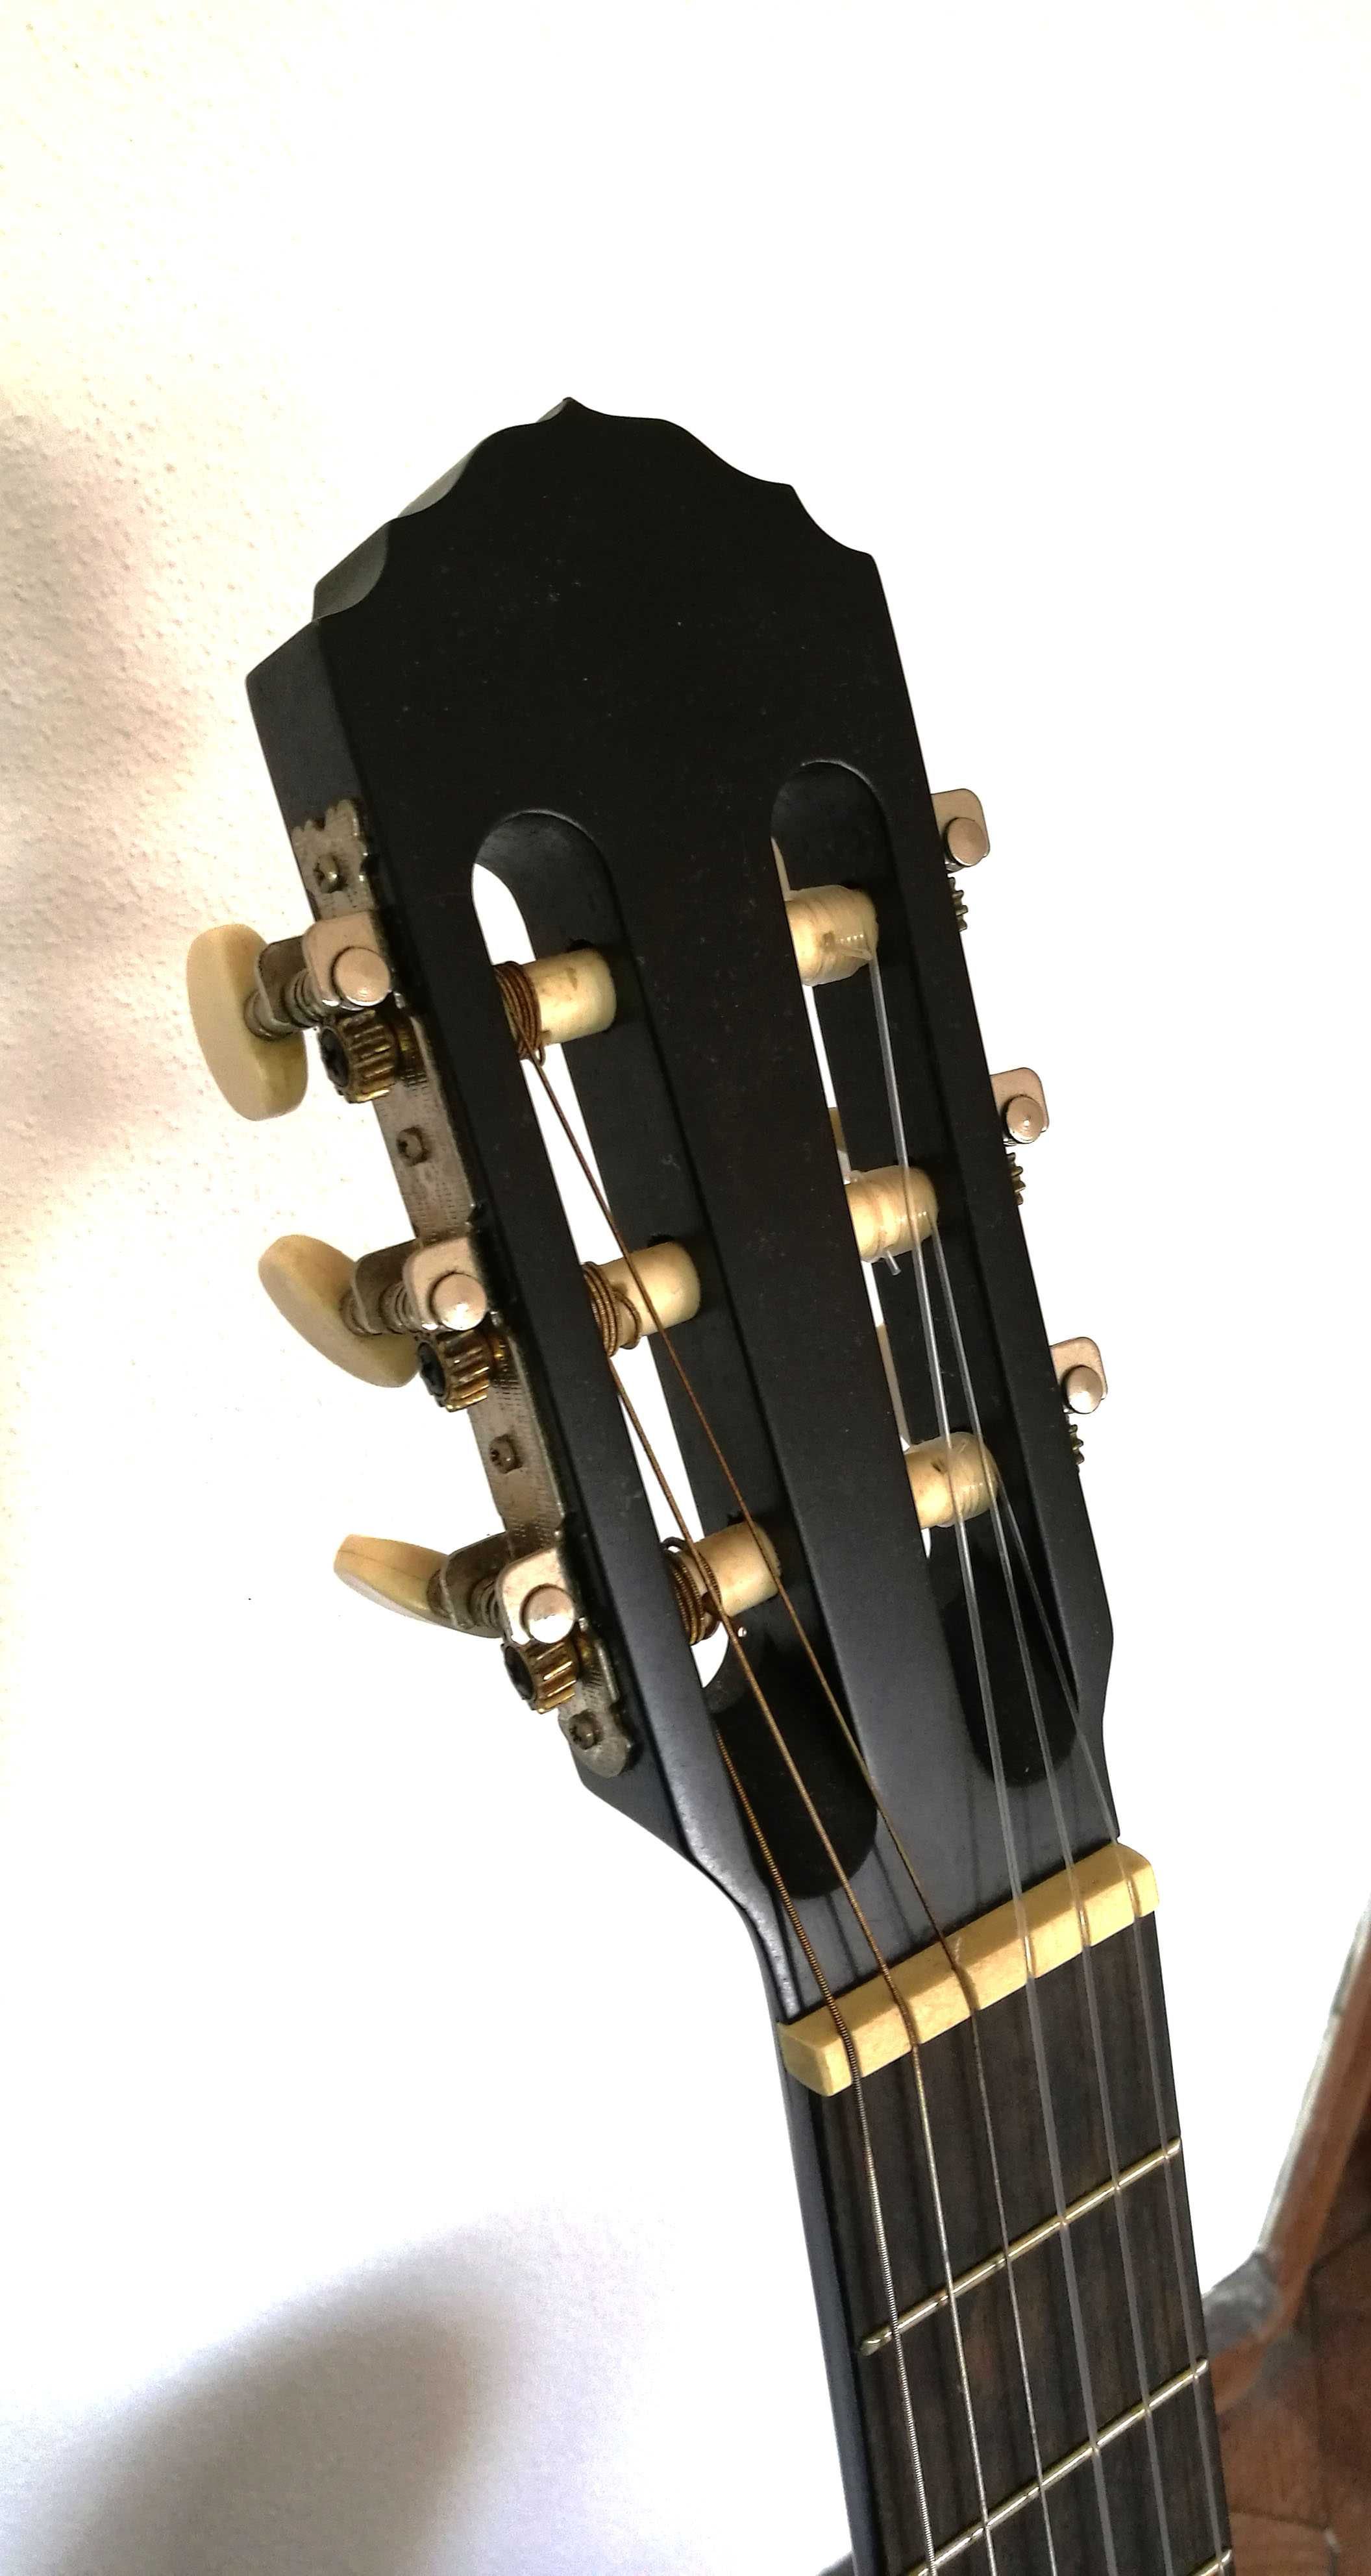 Guitarra Clássica [Luthier nacional] e componentes.